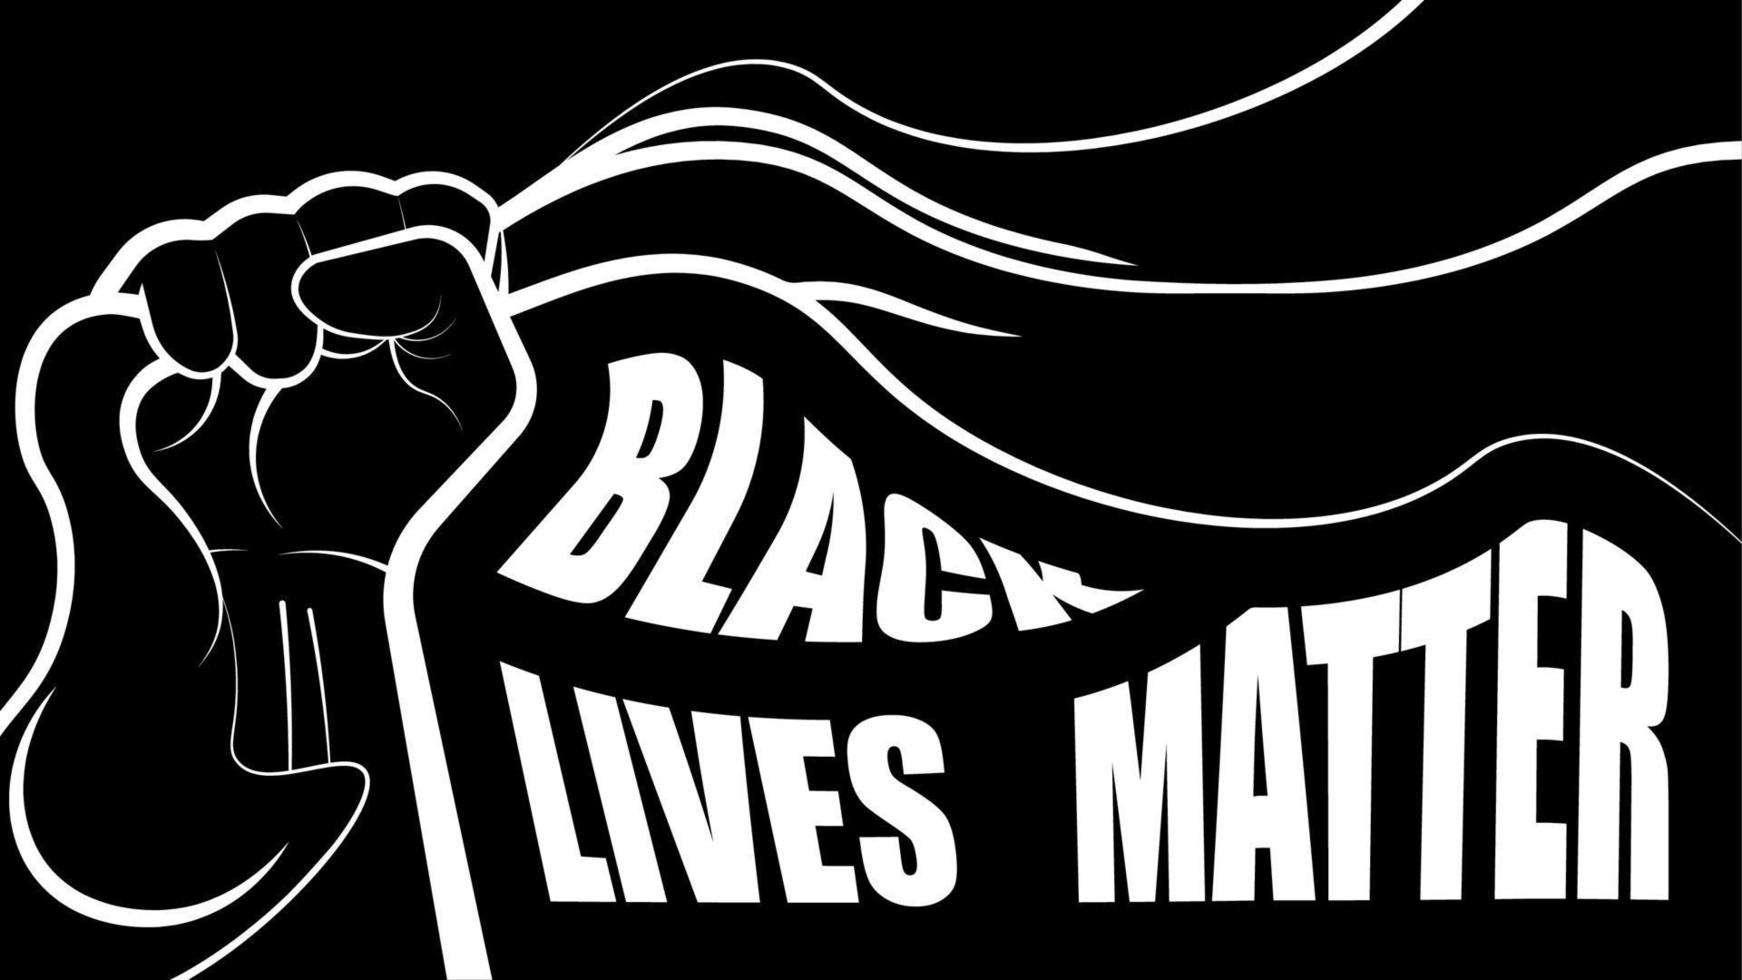 poster di protesta con testo black lives matter. stringe nel pugno uno stendardo, simbolo di forza, di lotta per la libertà. vettore su sfondo nero